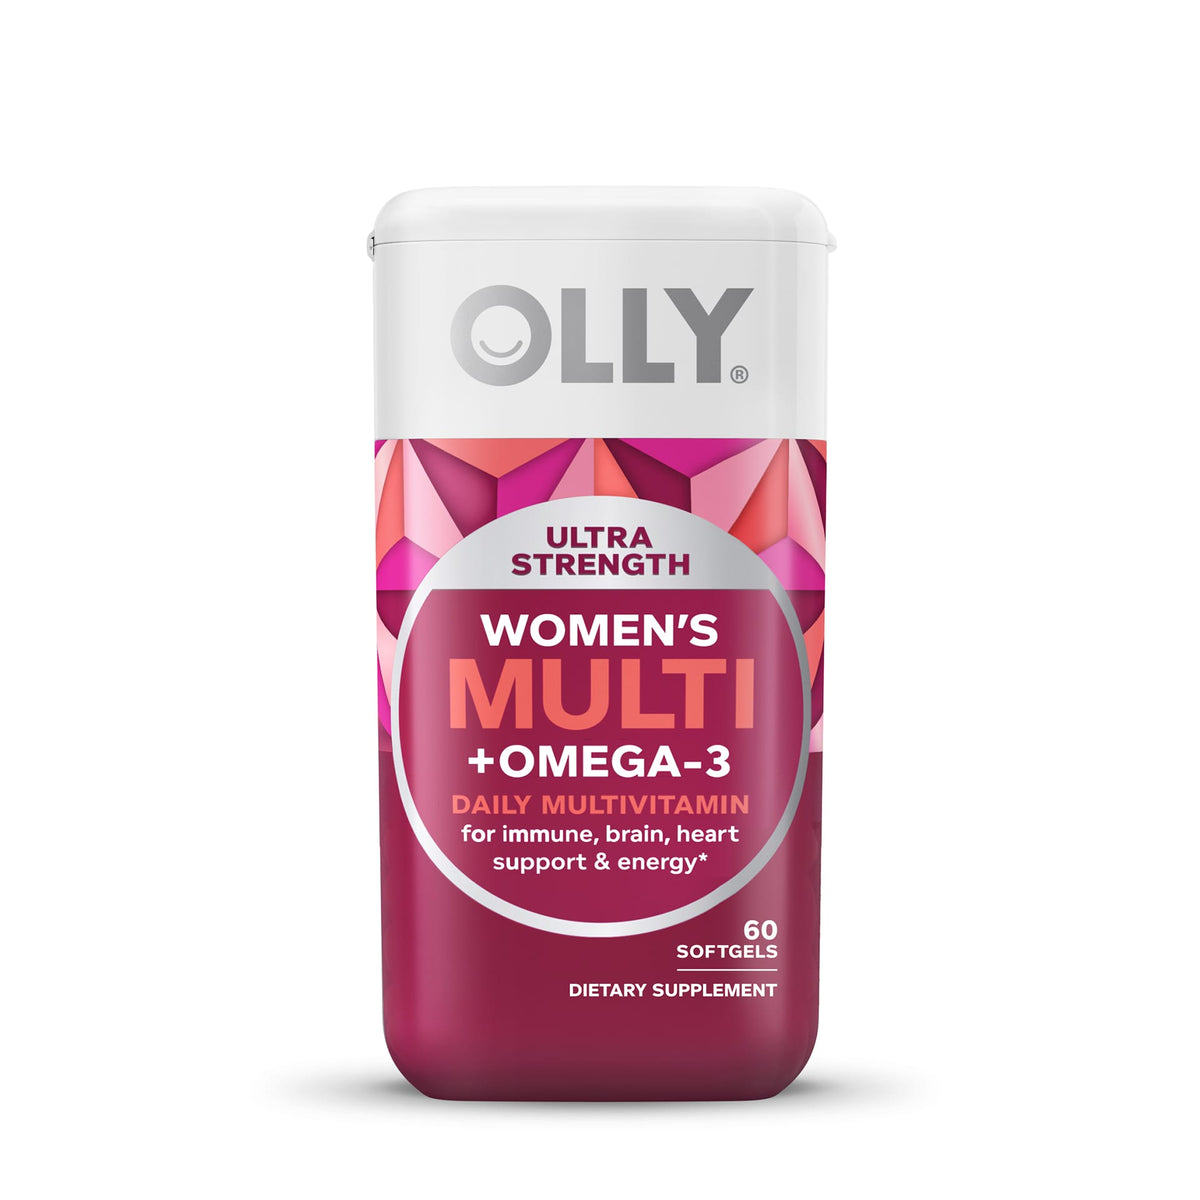 Ultra Strength Women's Multi + Omega-3 Softgels Image